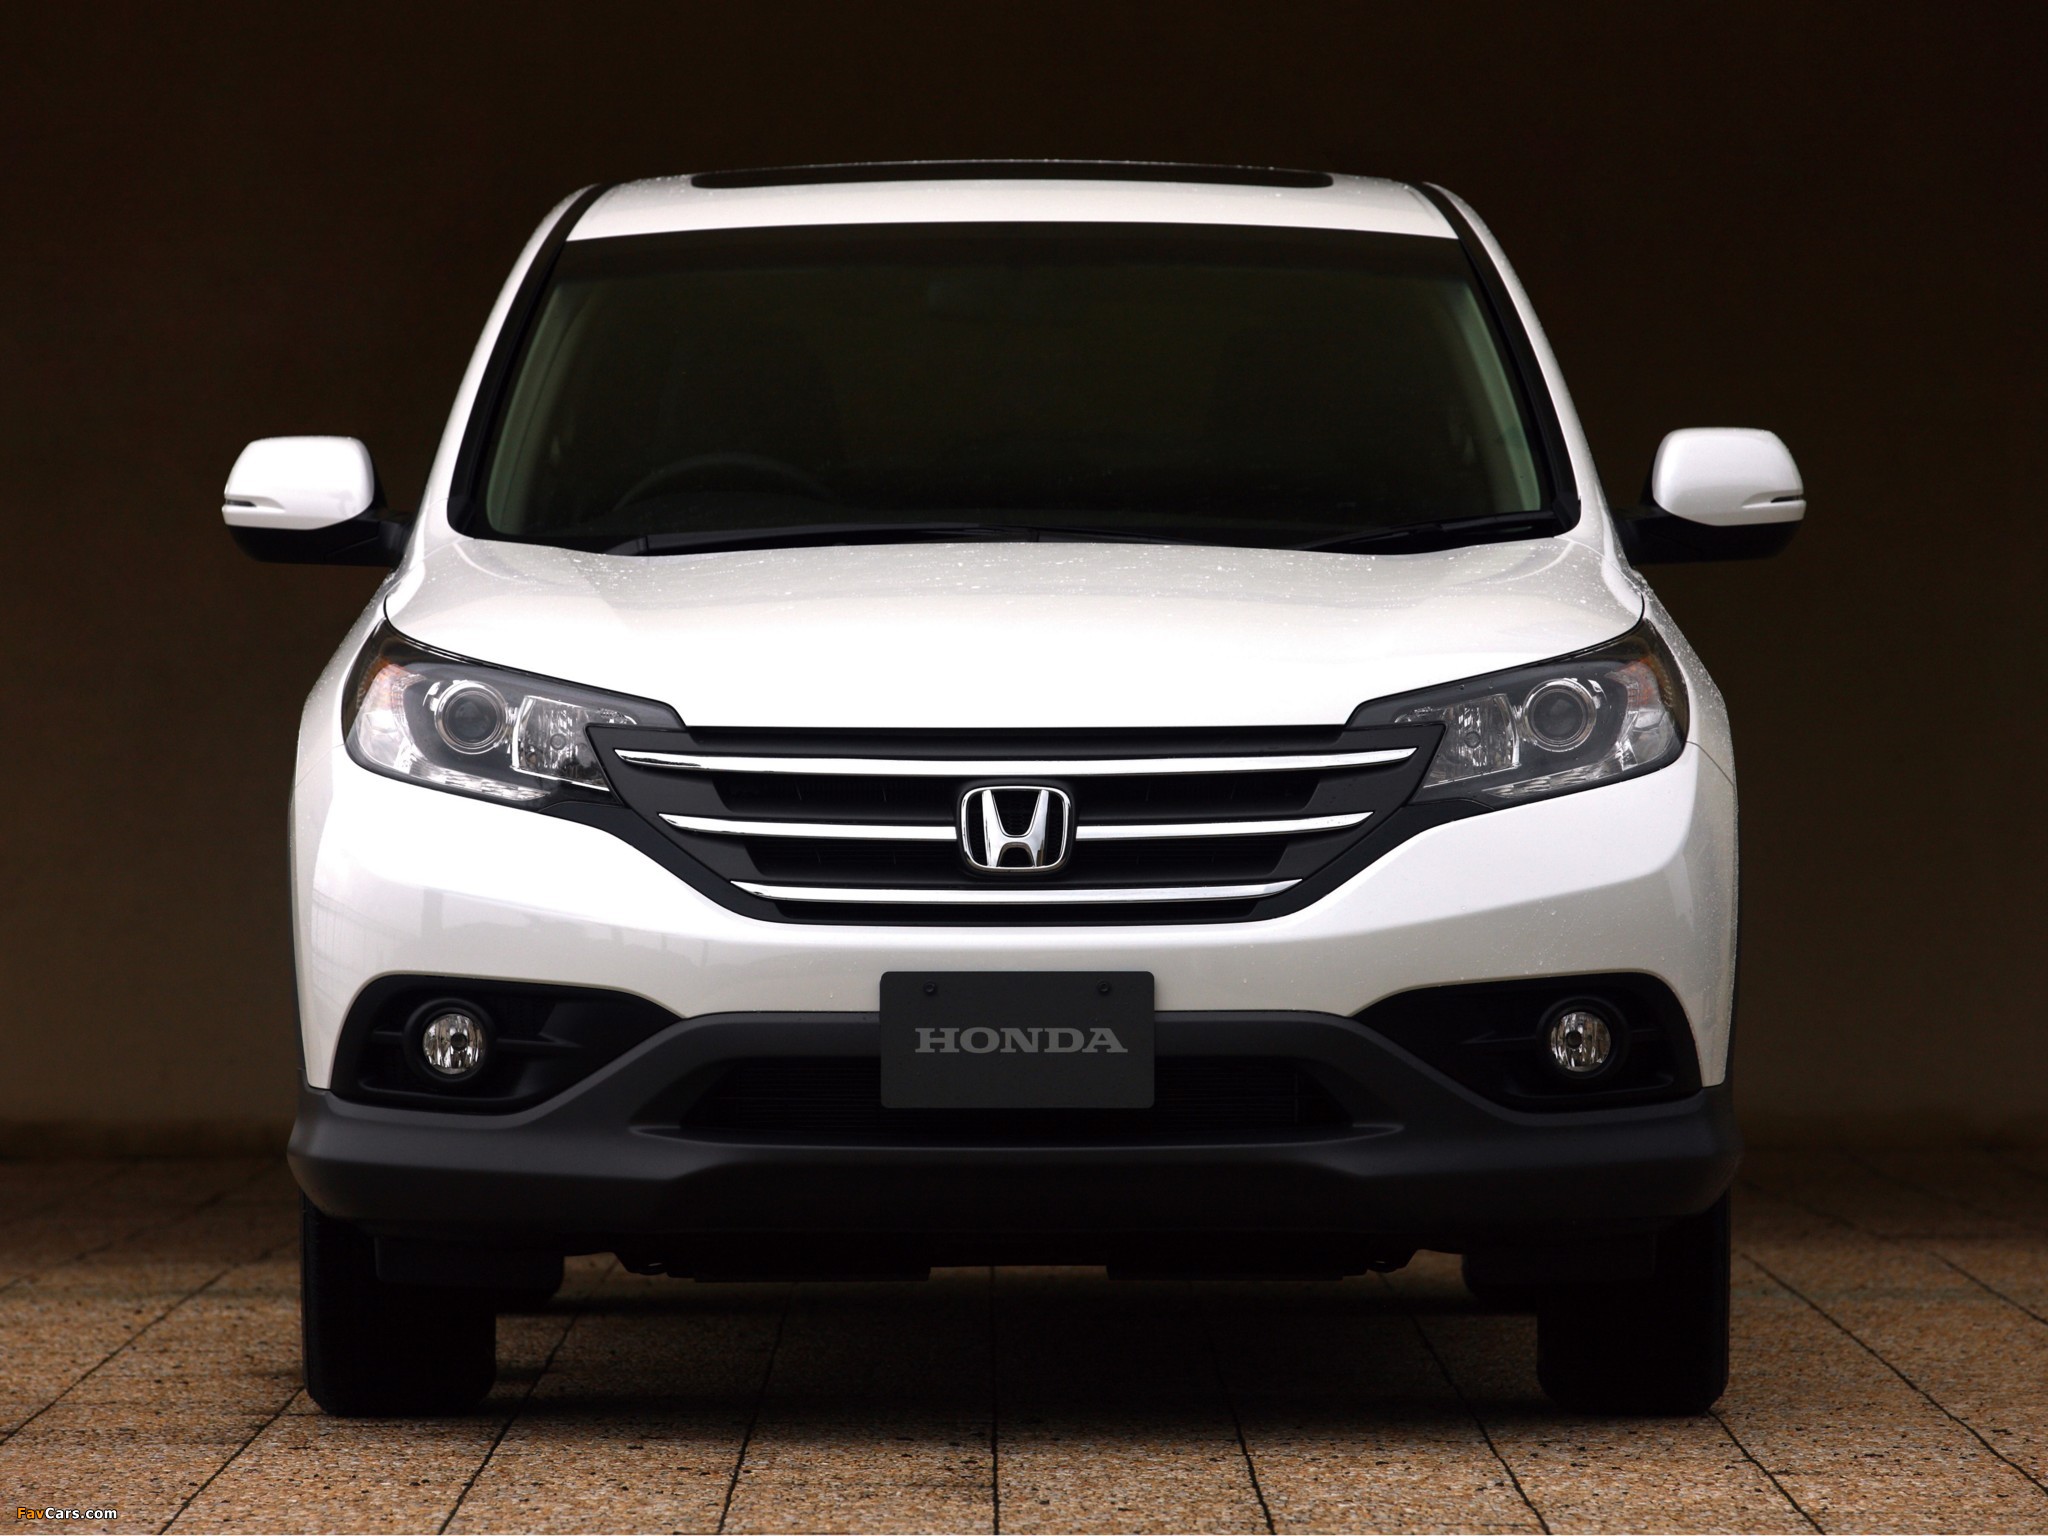 Купить хонда срв иркутск. Honda CRV 2012 белая. Honda CR-V 2011. Honda CRV белая 2013. Honda CR-V белая CRV 2012.